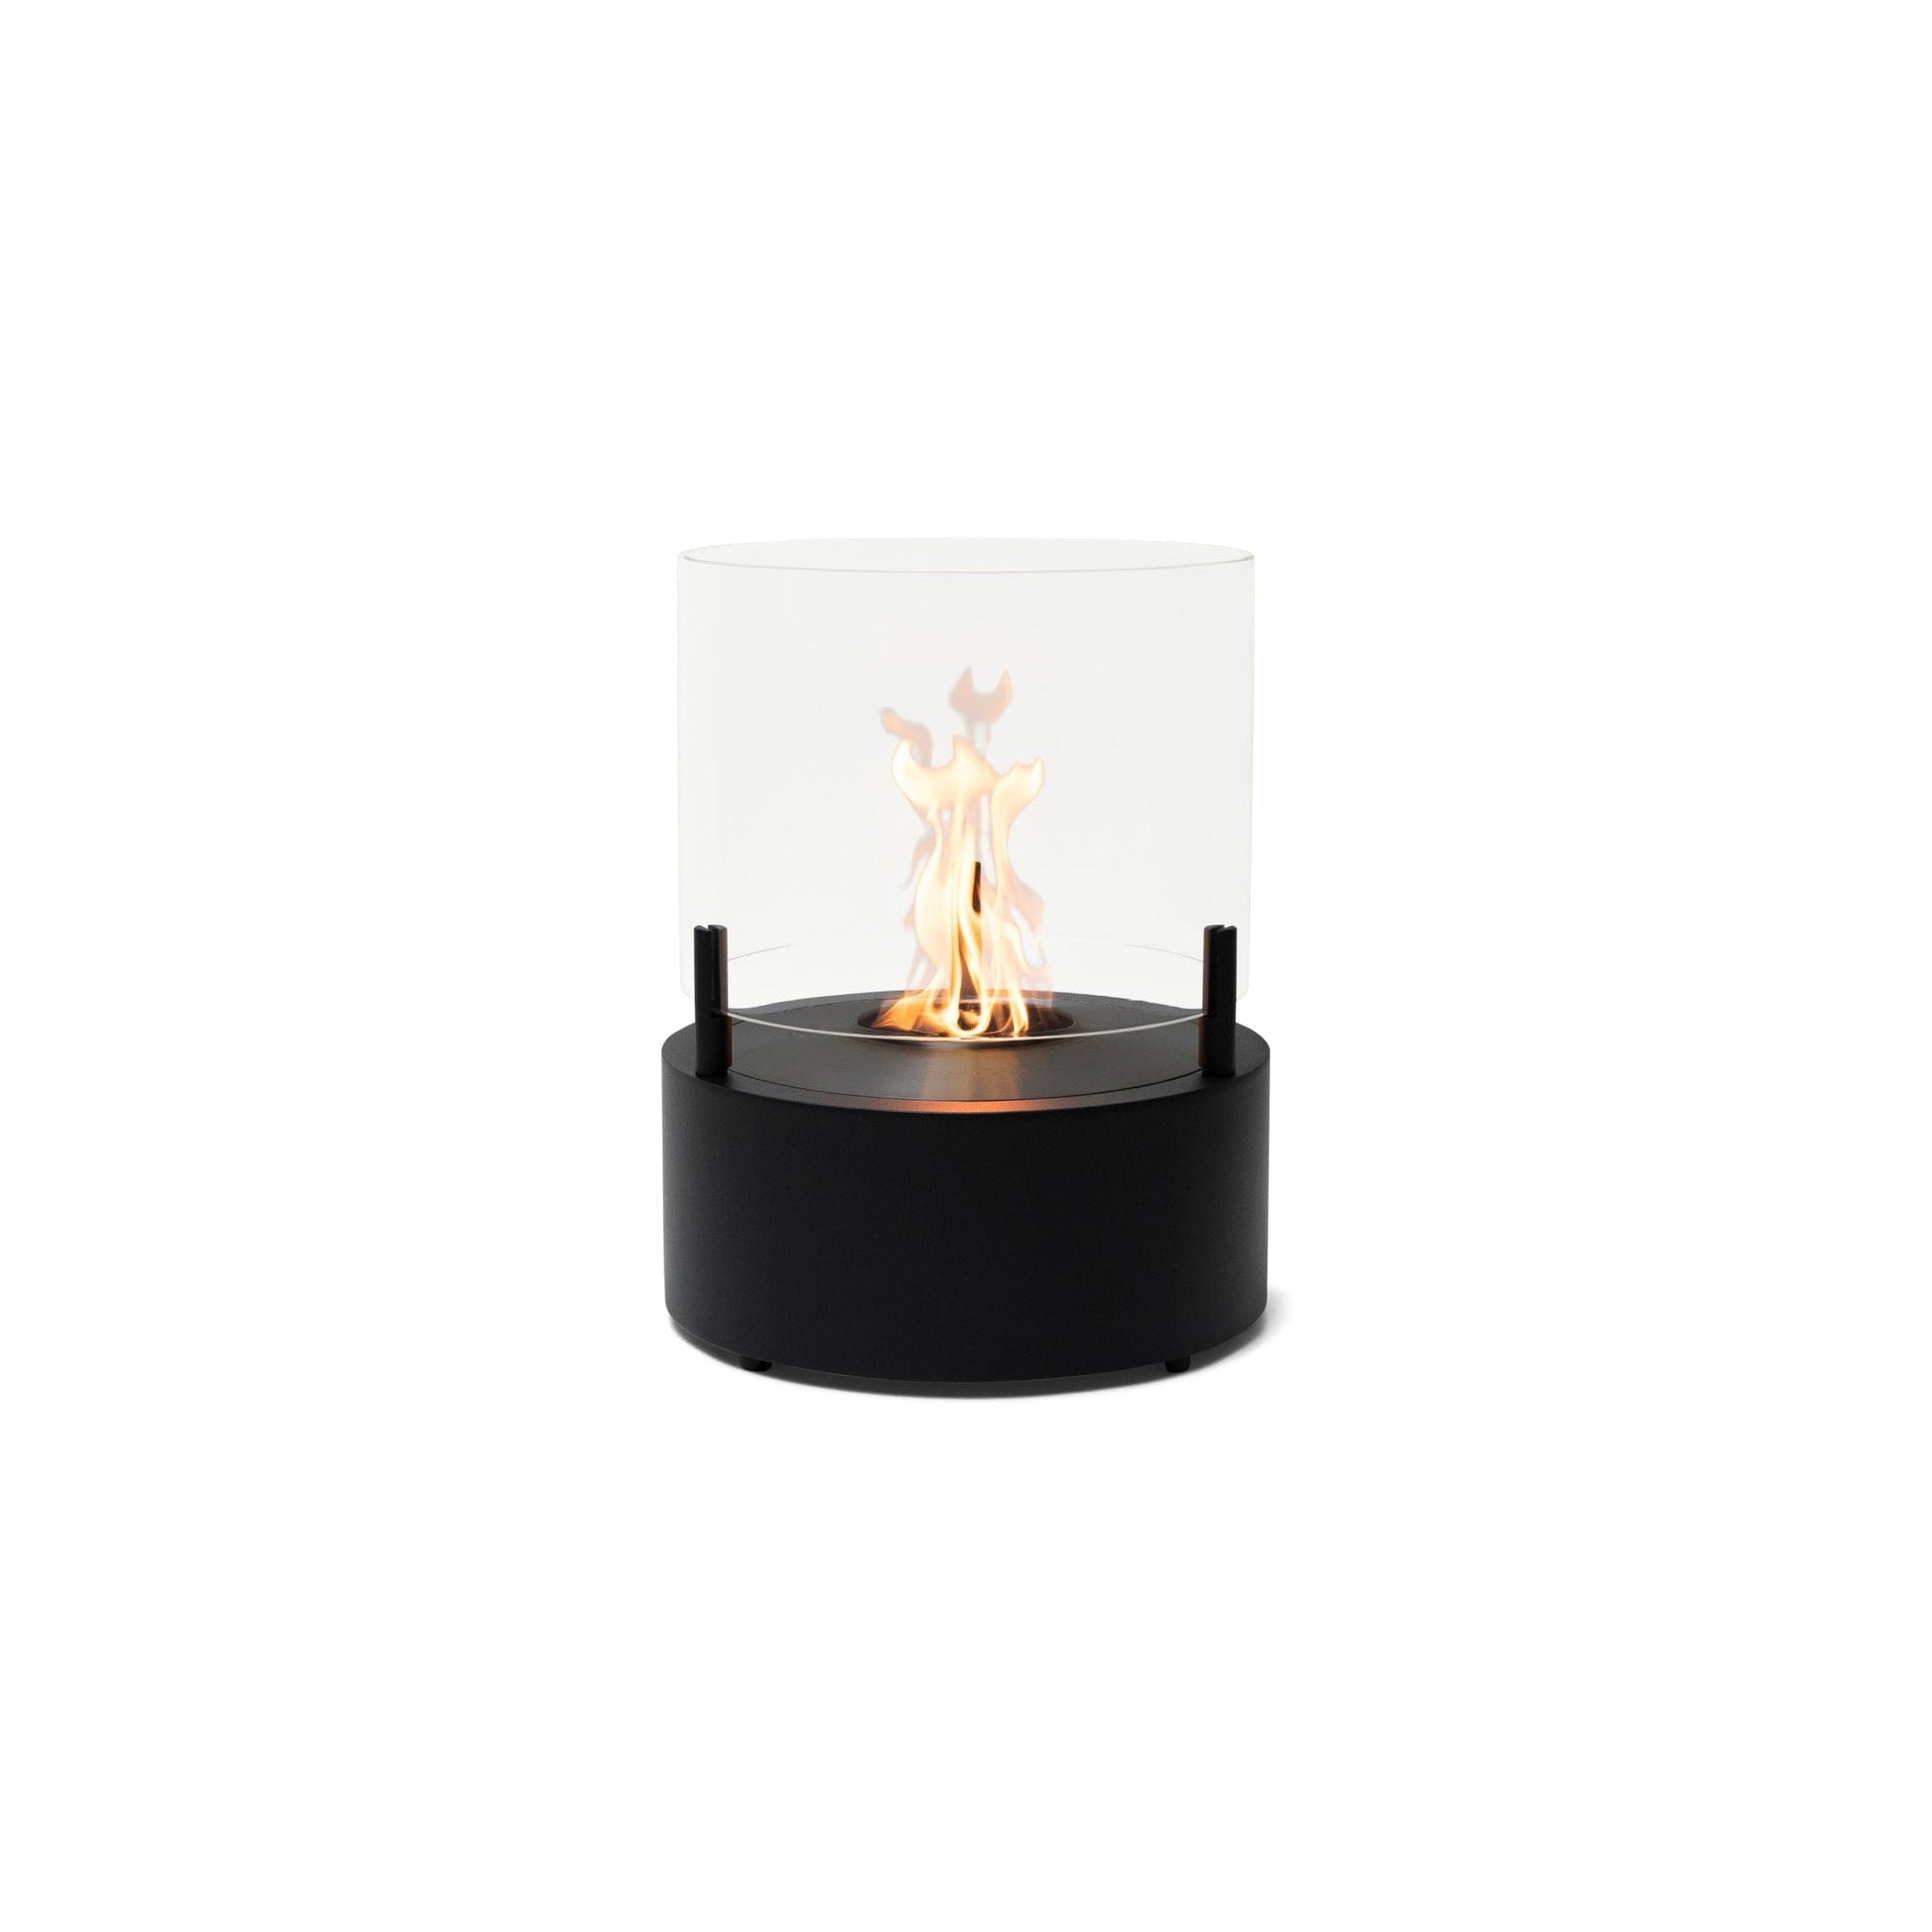 EcoSmart Fire T-Lite 8 21" Black Freestanding Designer Fireplace with Black Burner by MAD Design Group